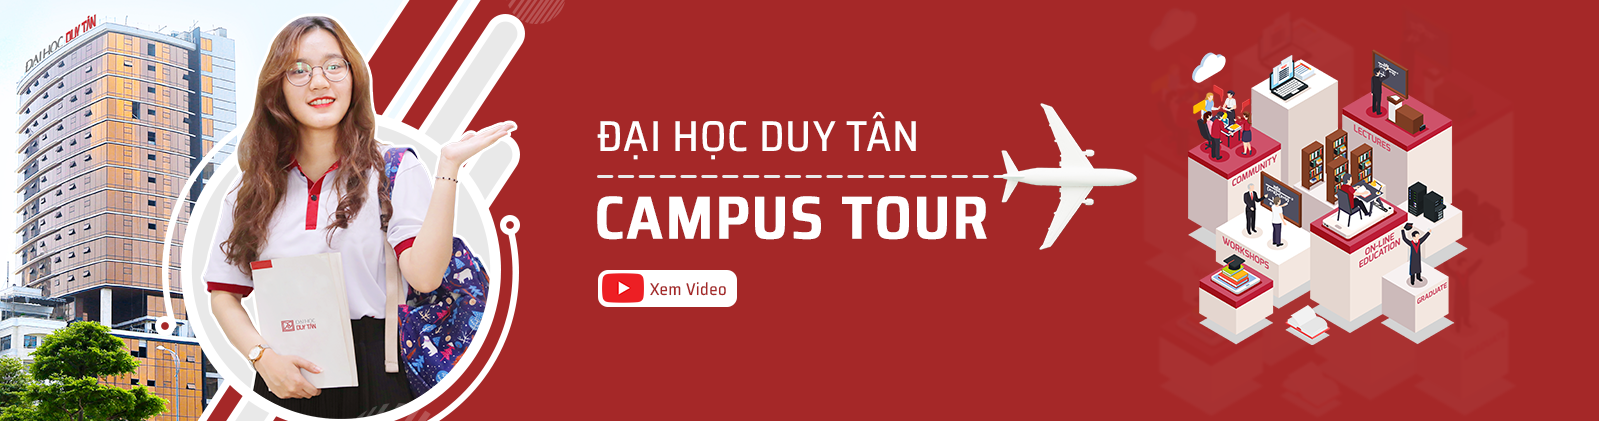 Campus Tour